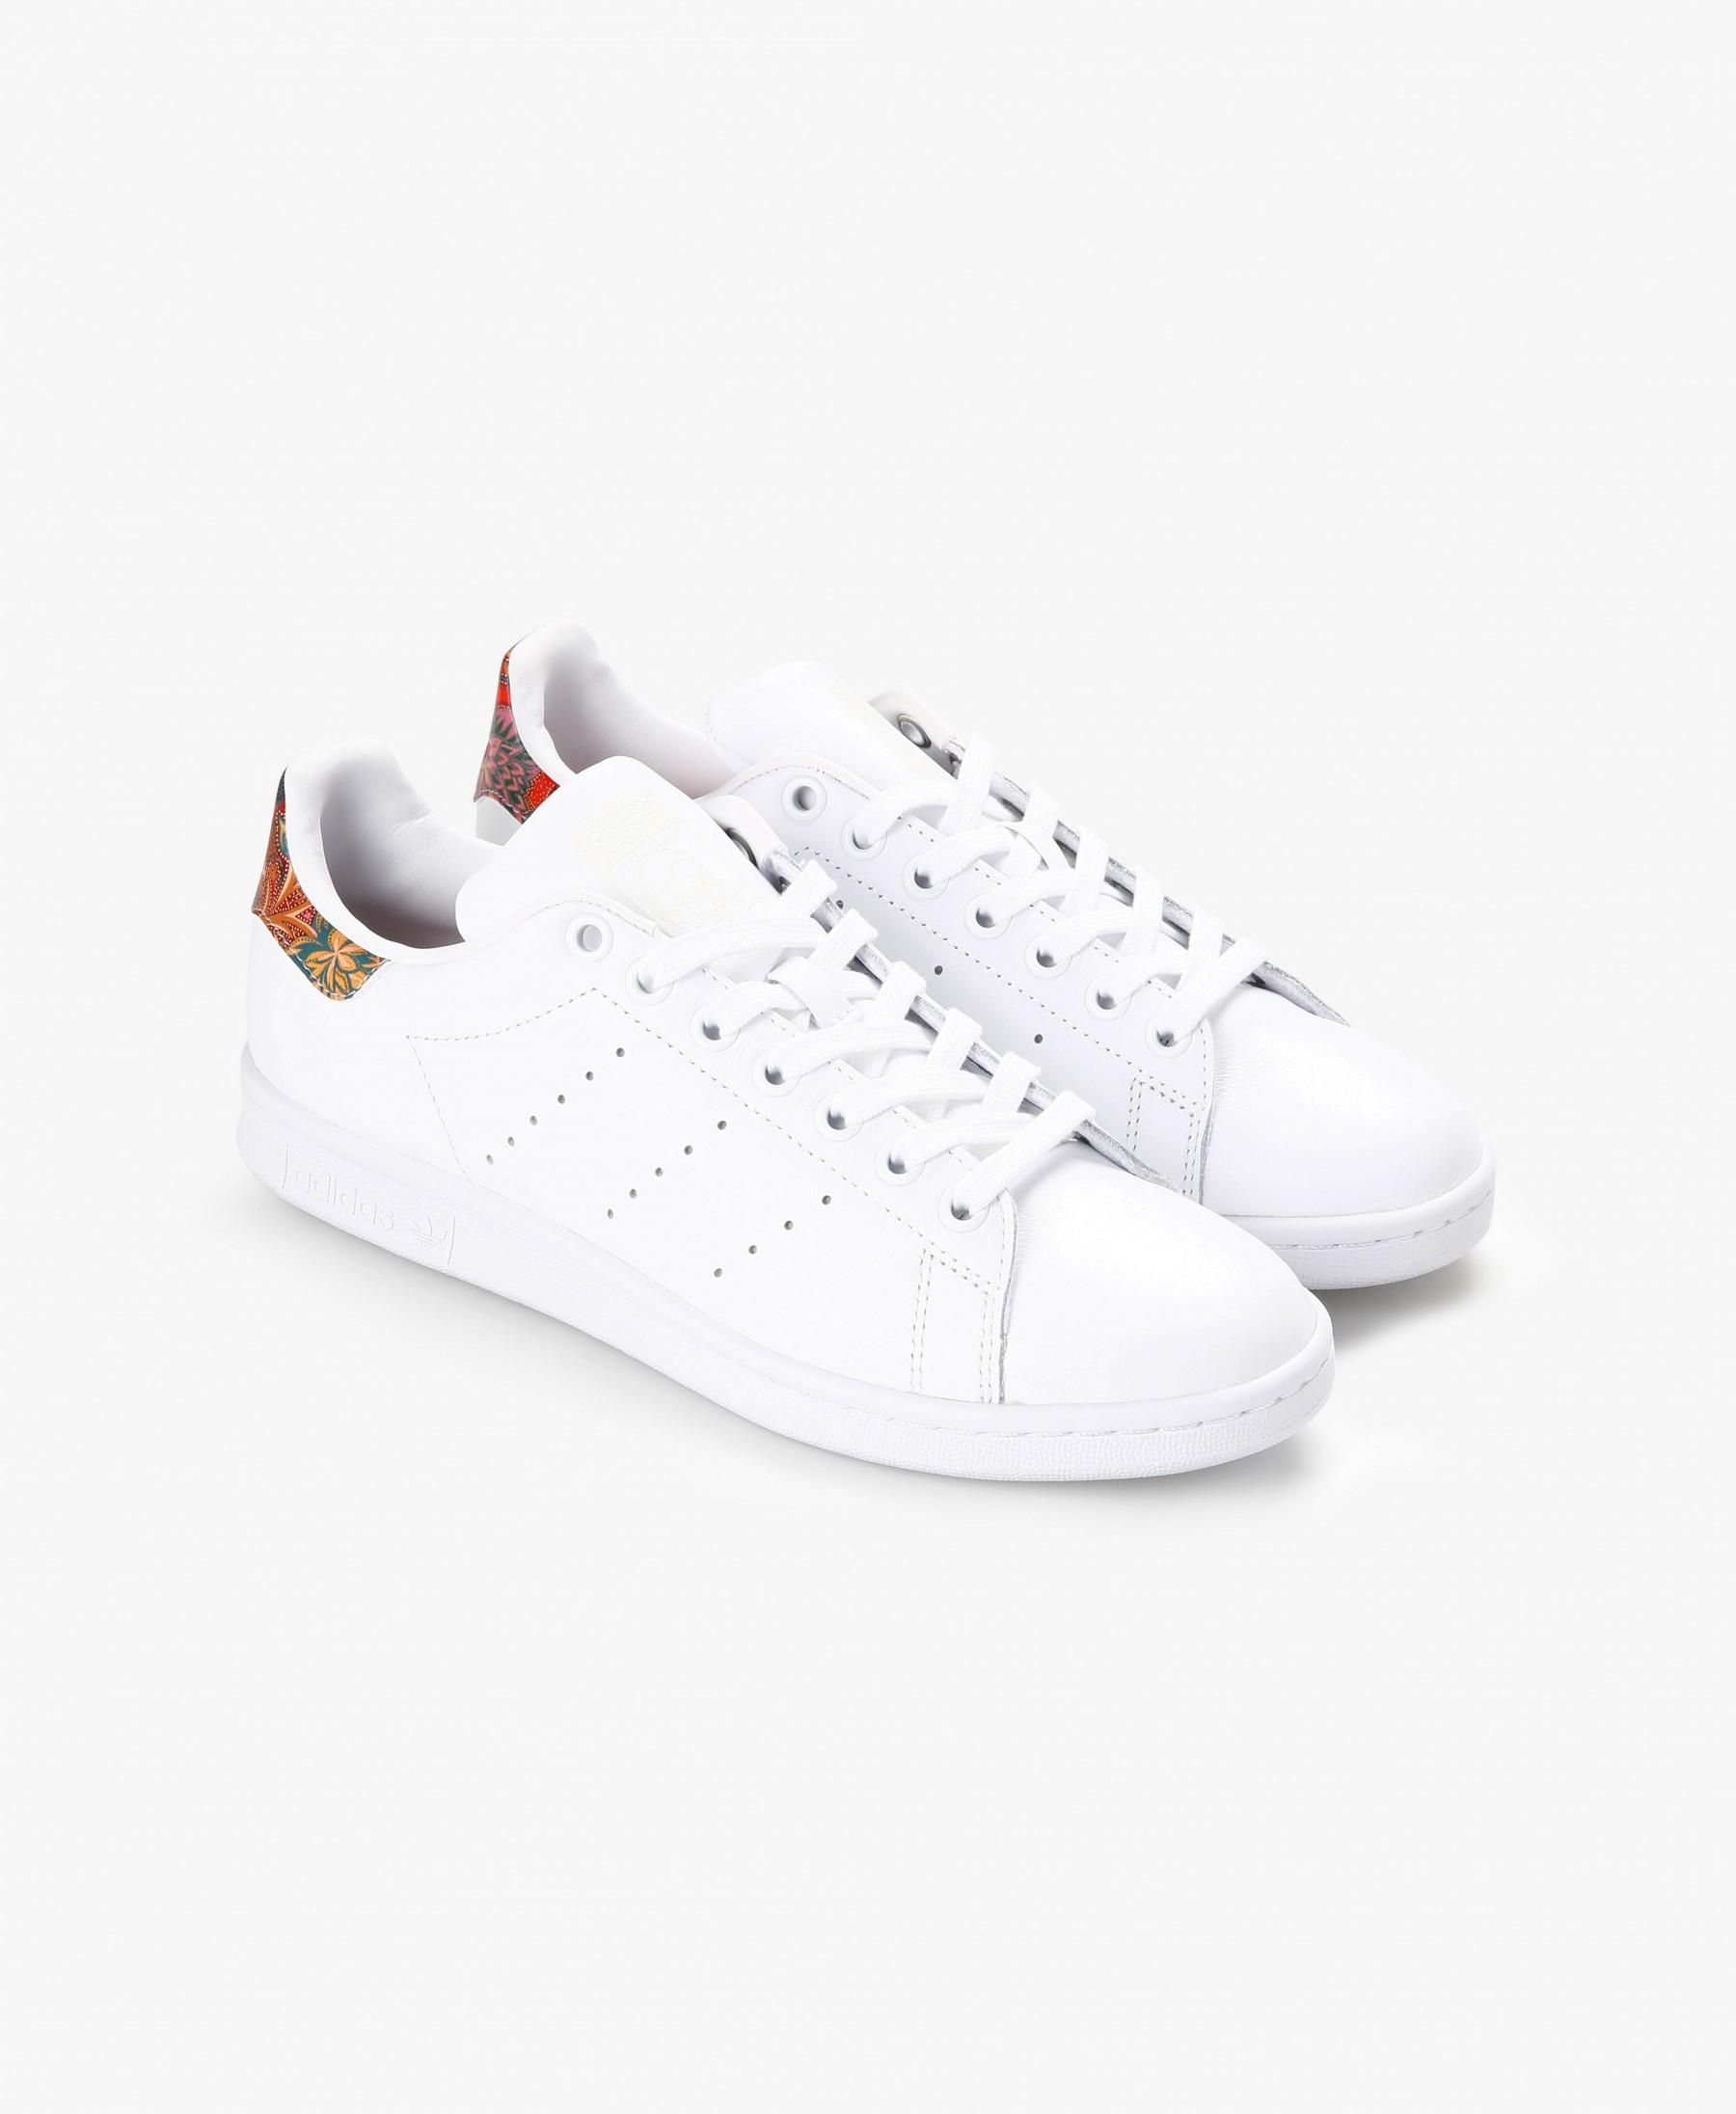 White Stan Smith Sneakers